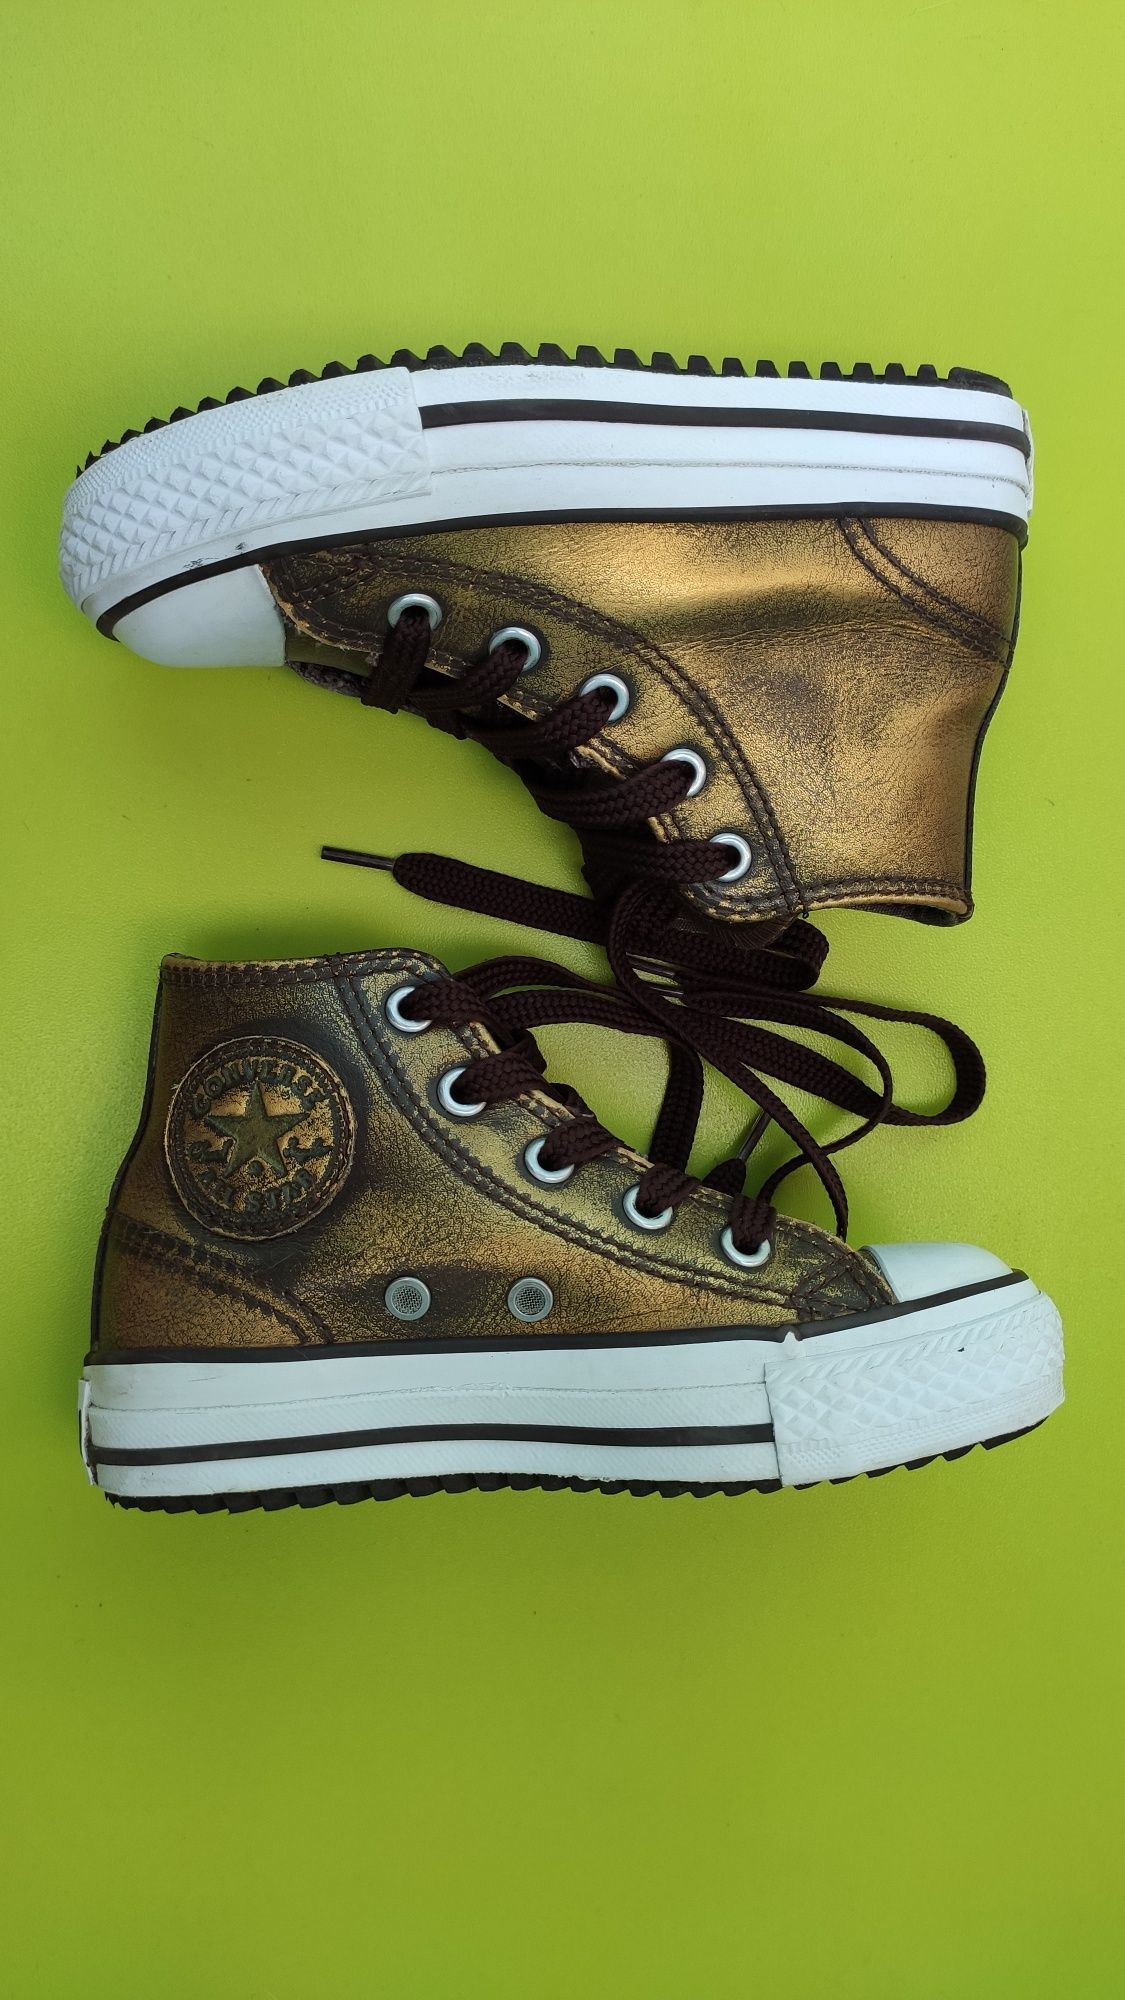 Ботинки кеды кожаные Конверс Converse для девочки размер 27, 17 см.